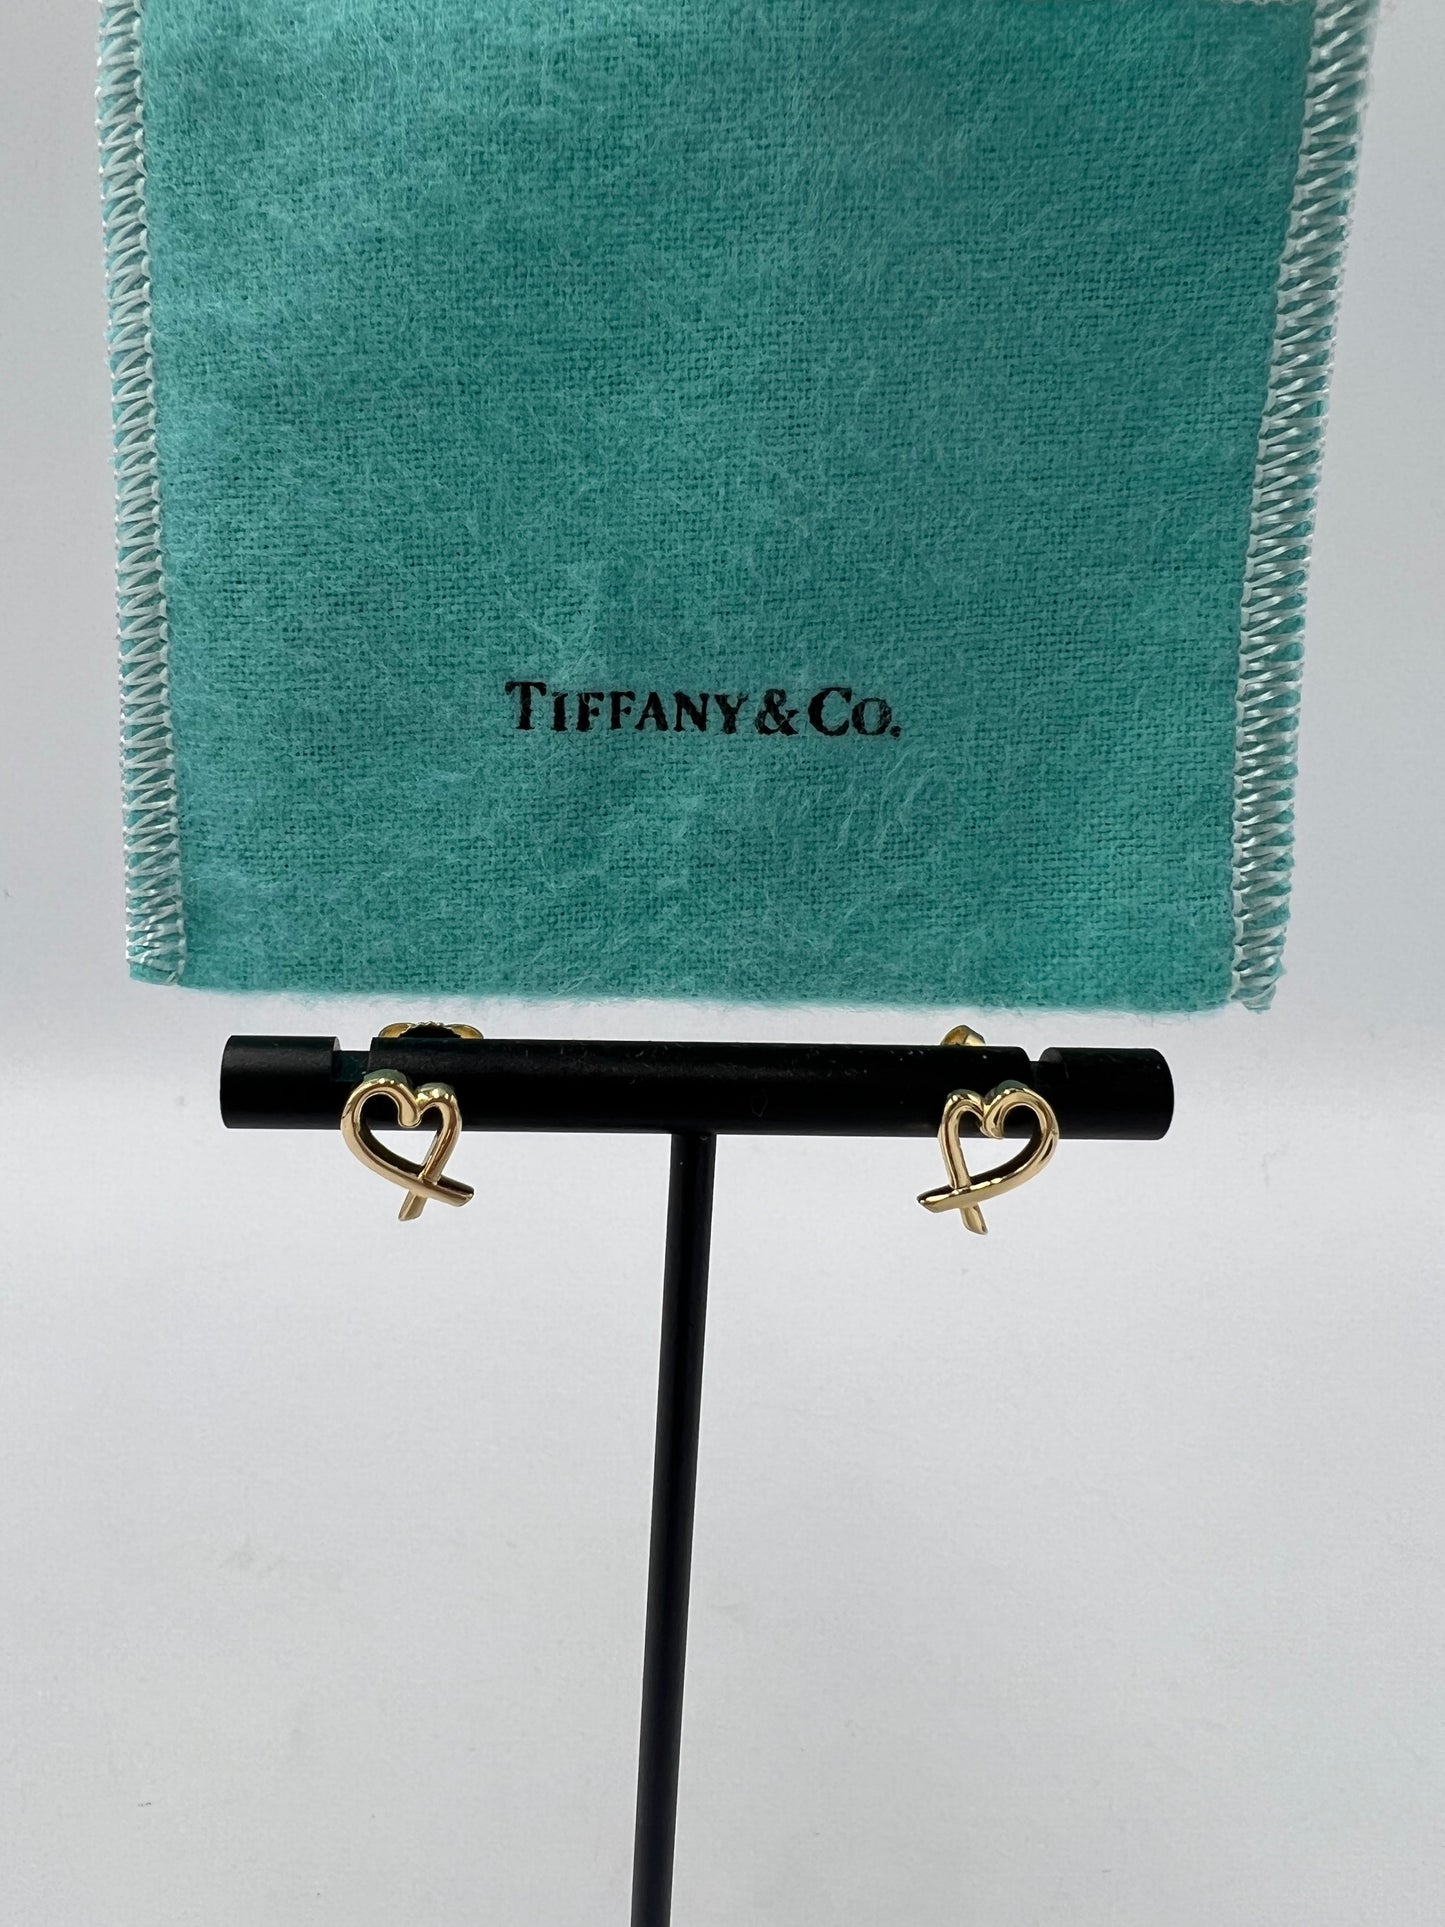 Tiffany & Company Poloma Picasso Loving Heart Earrings